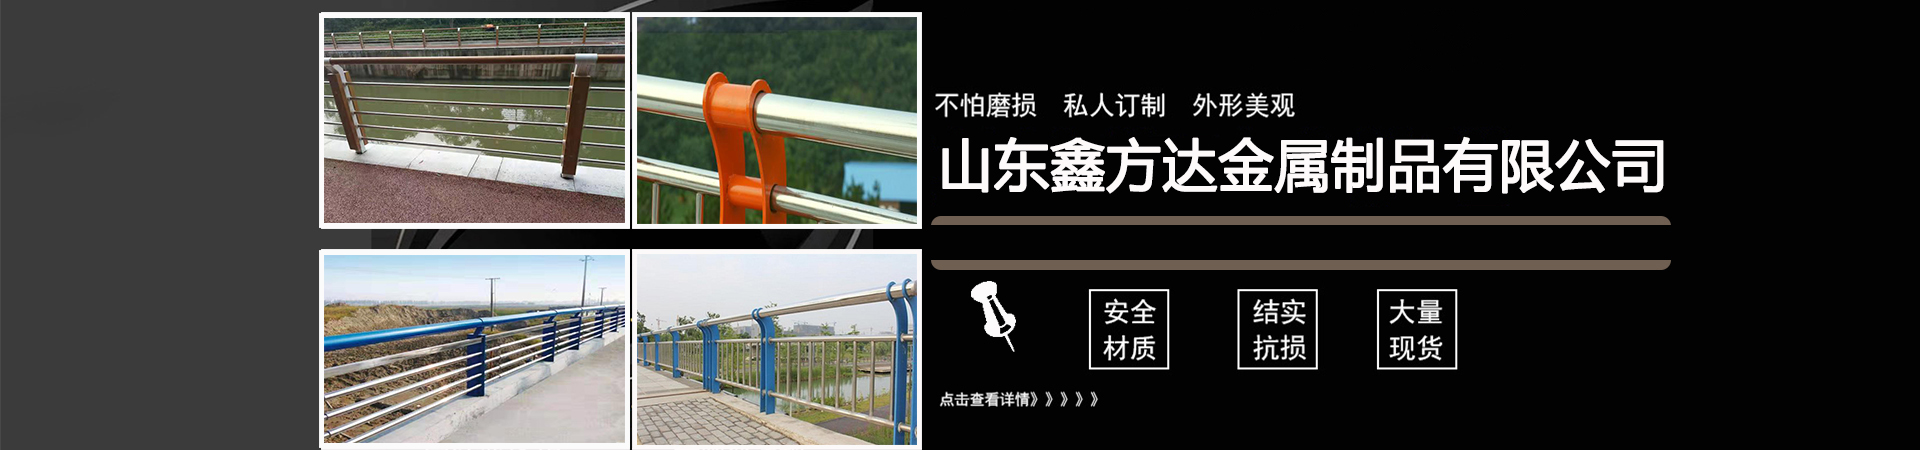 天桥护栏、哈尔滨本地天桥护栏、哈尔滨、哈尔滨天桥护栏